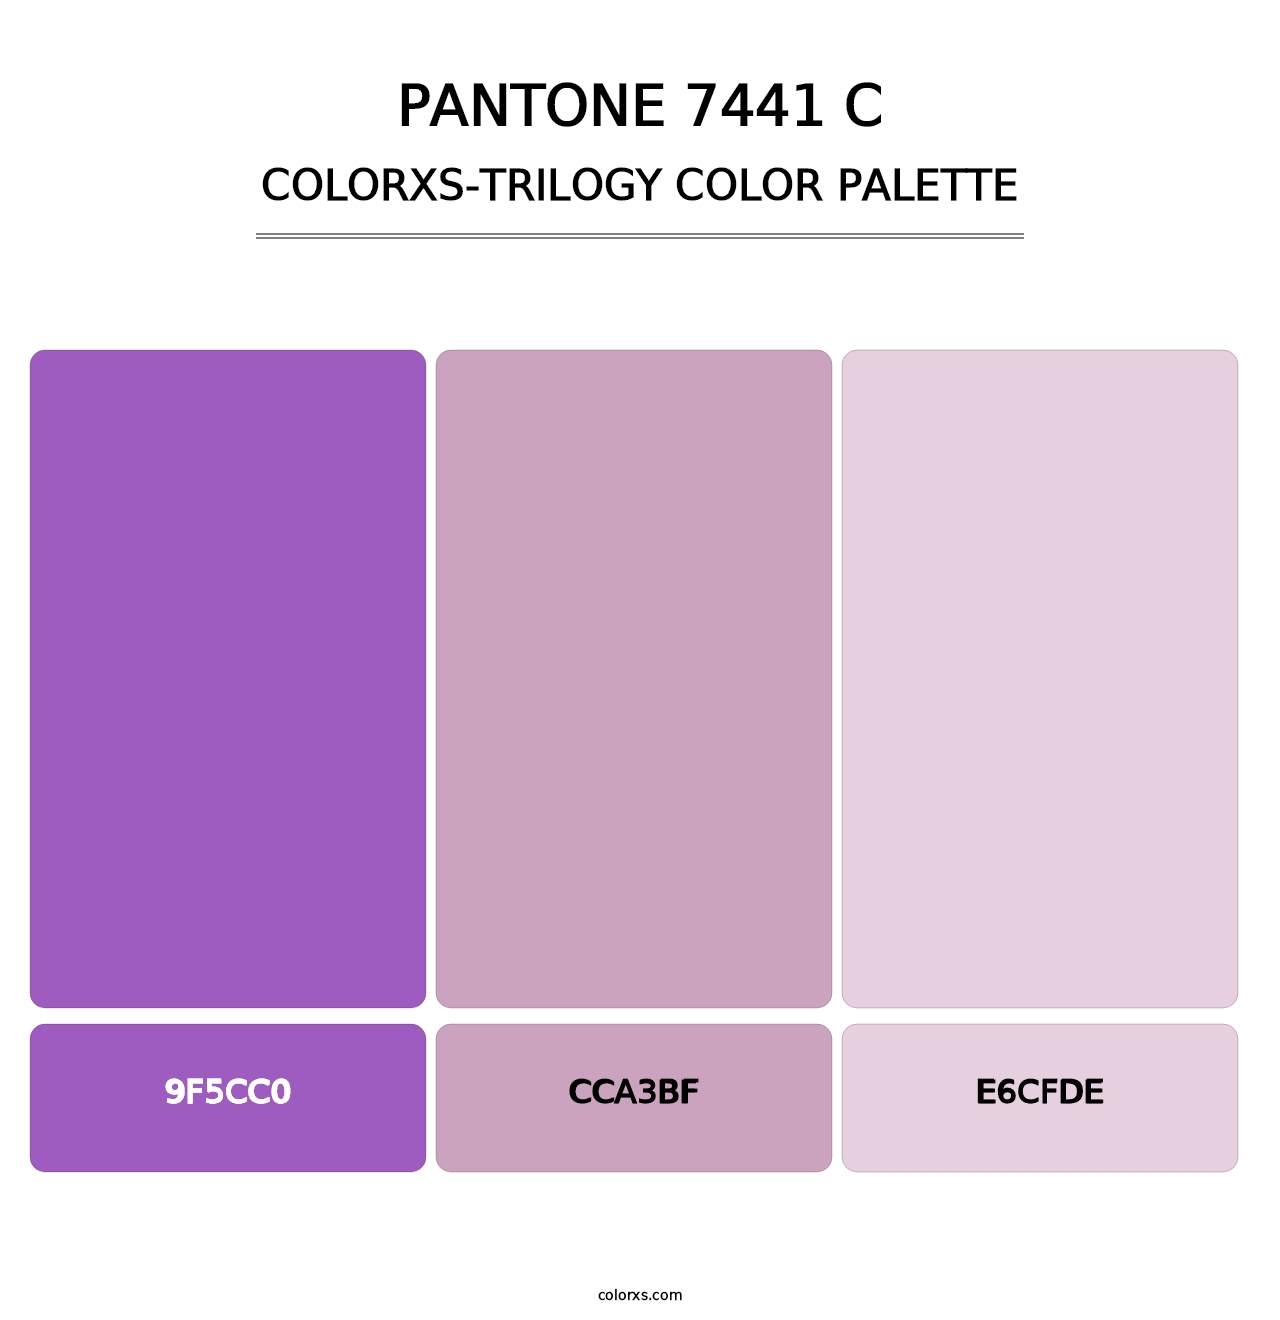 PANTONE 7441 C - Colorxs Trilogy Palette